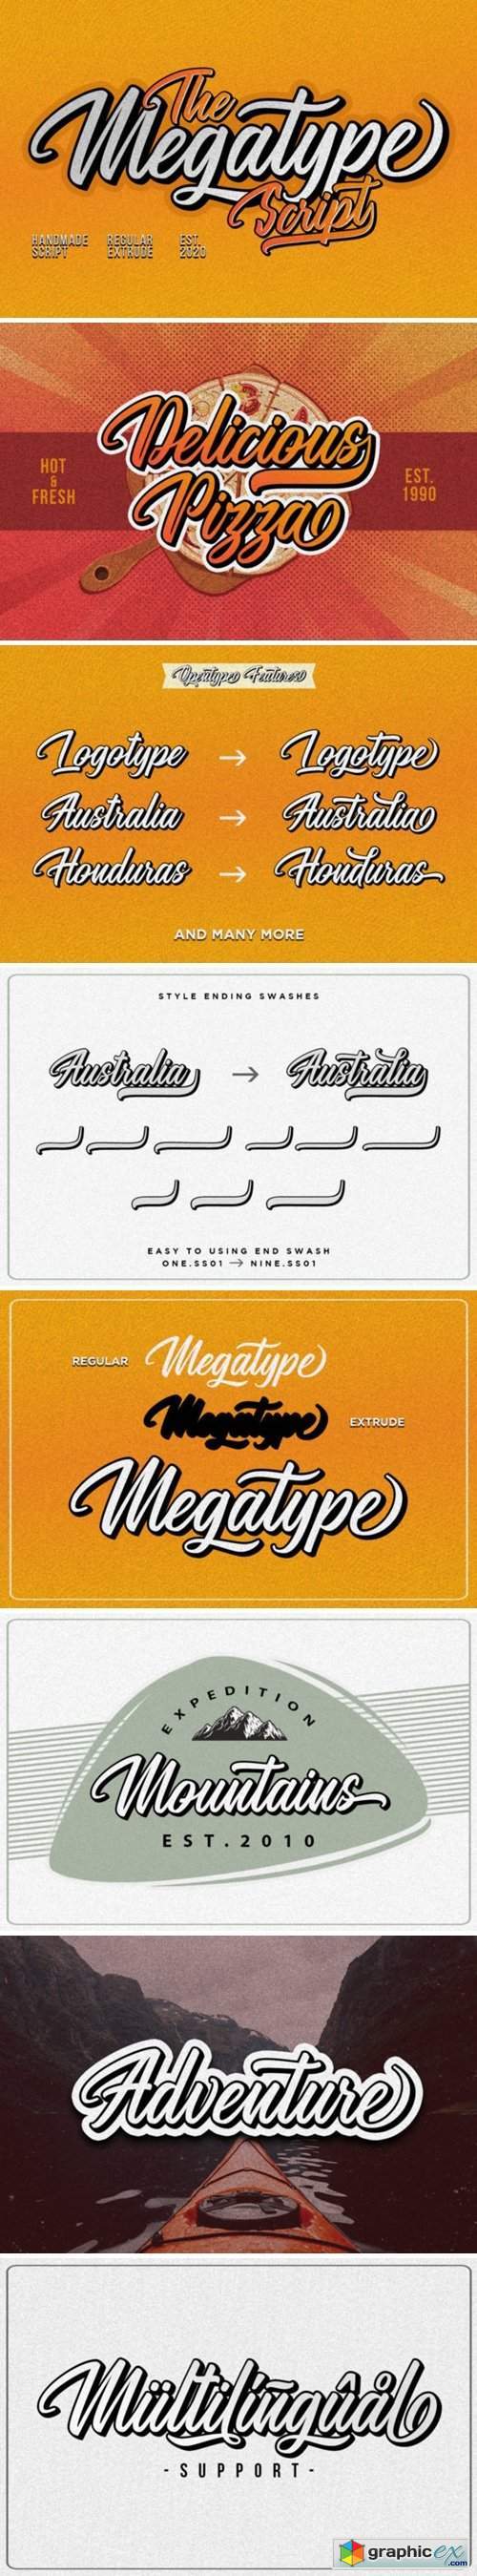 The Megatype Script Font